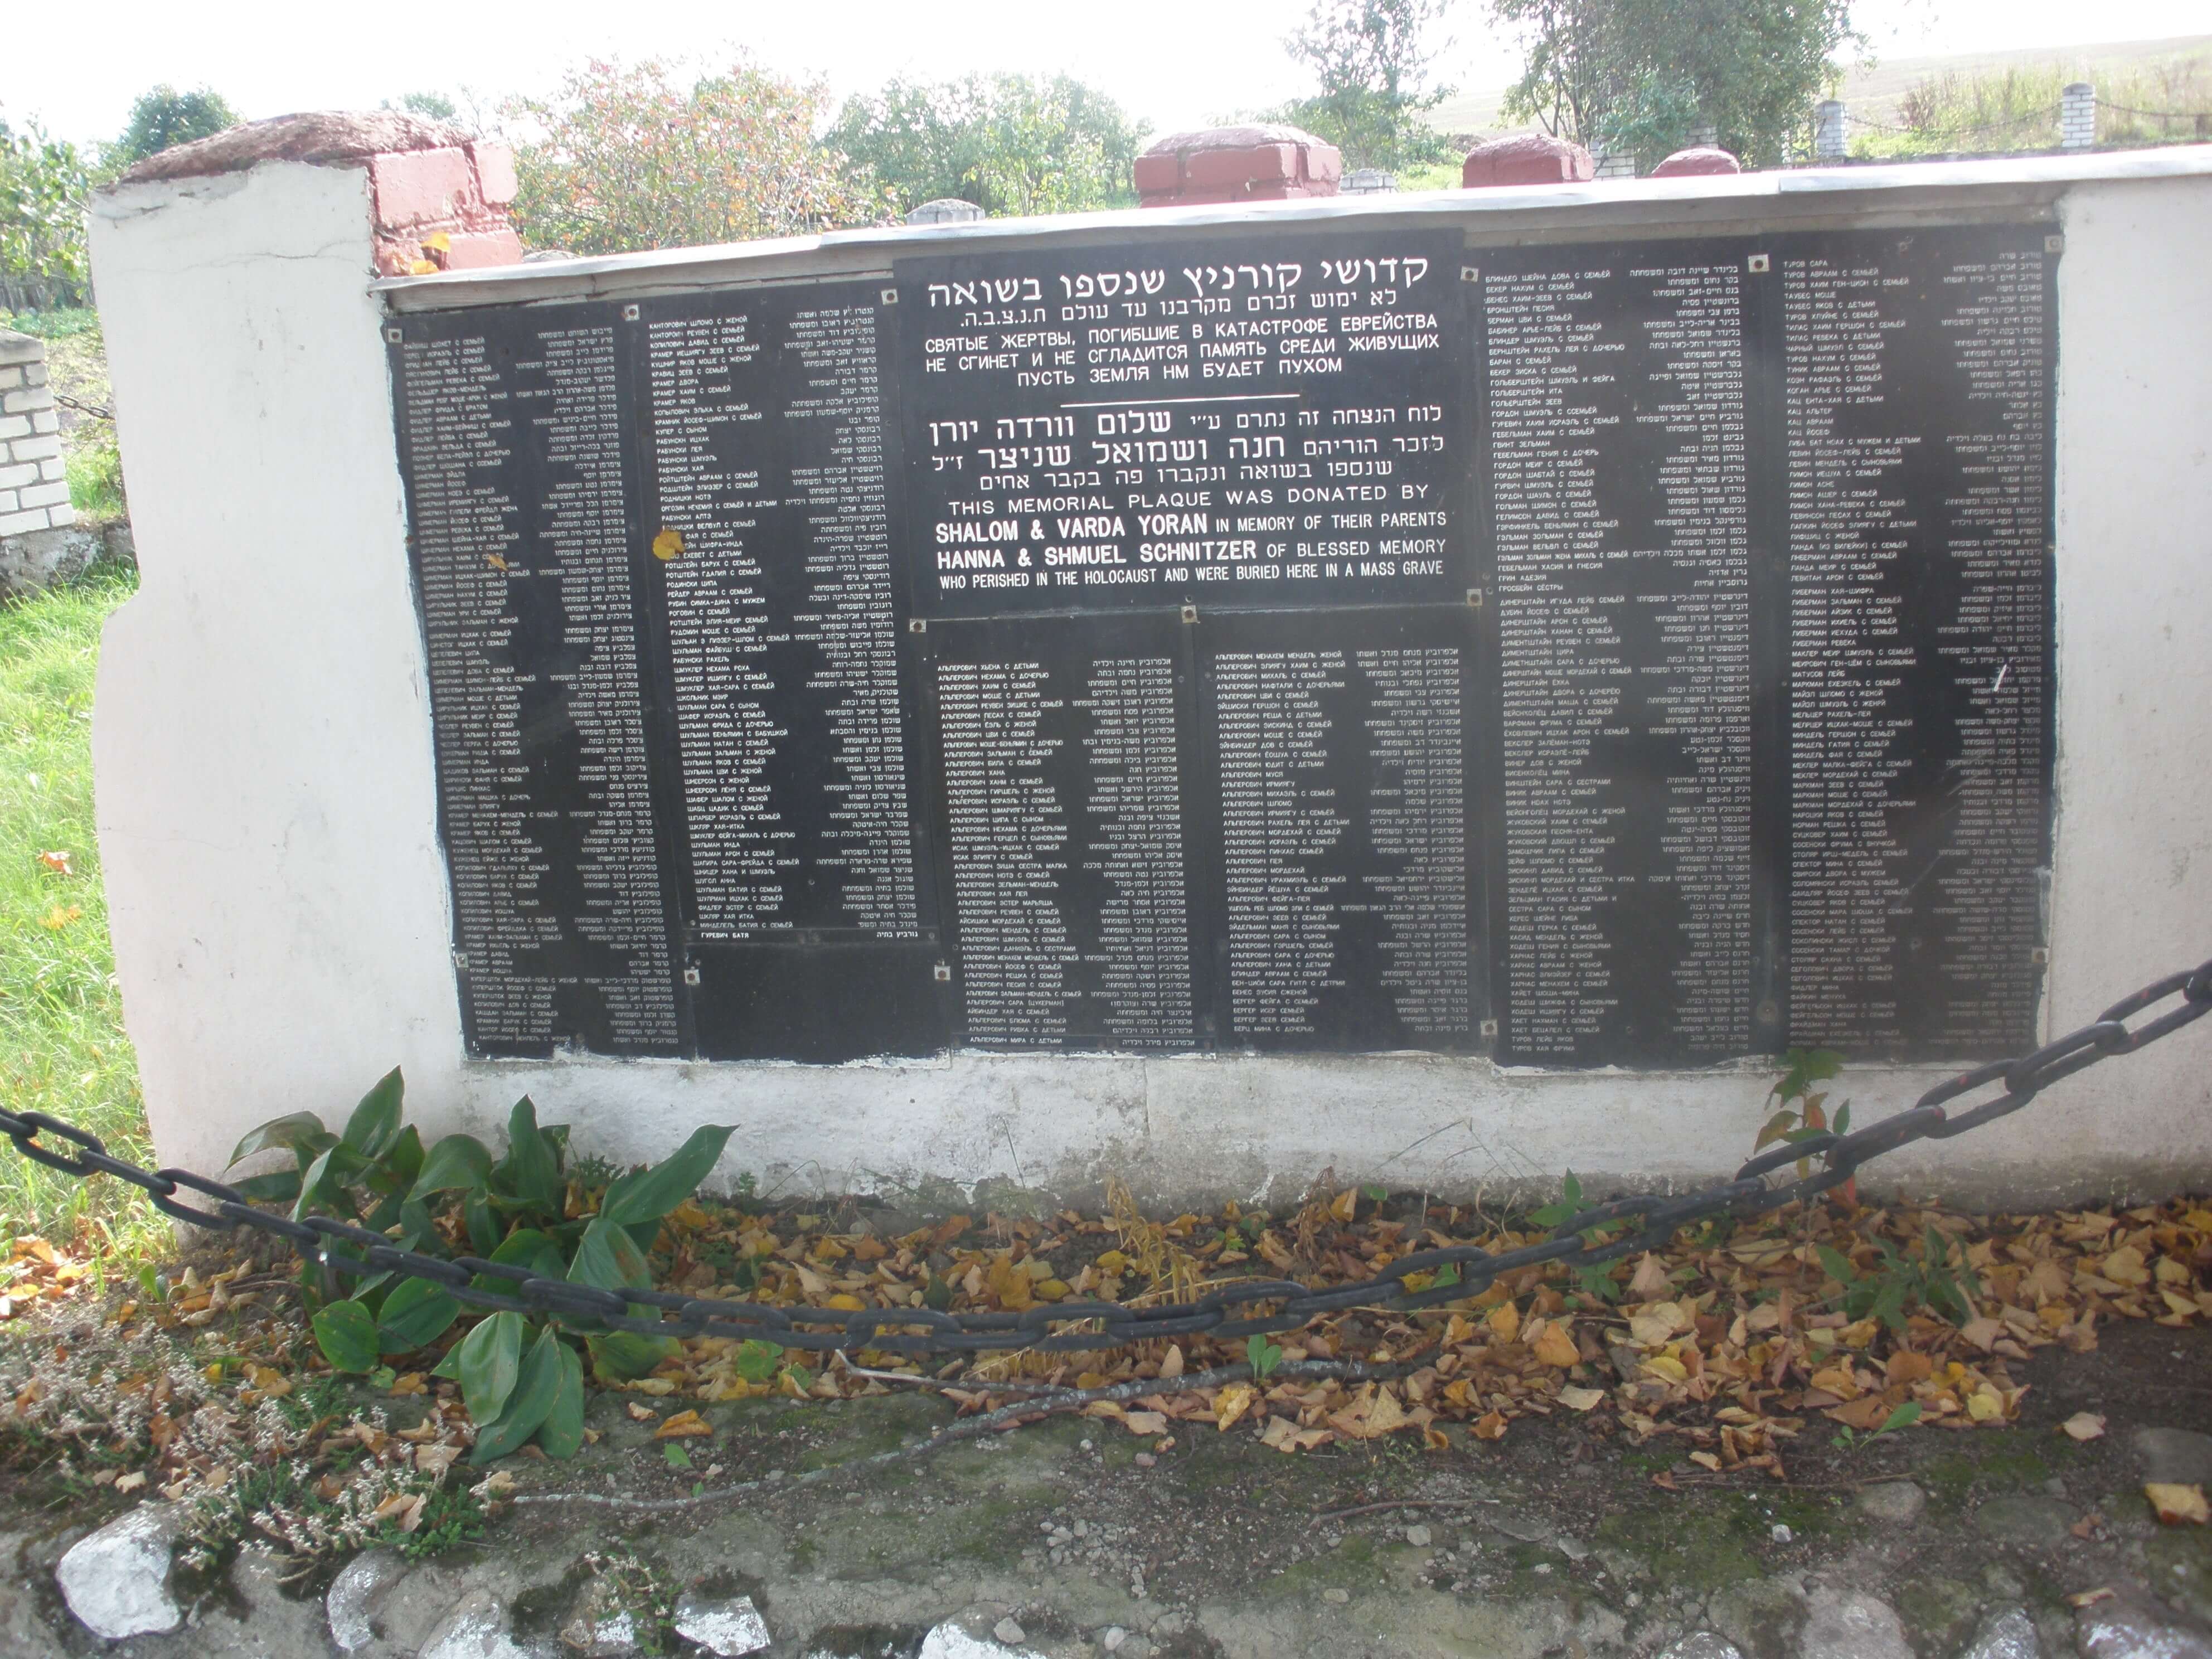 المقبرة الجماعية في بلدة كورنيتز، مسقط رأس يوسف بليندر، تخليدًا لذكرى 1,040 يهوديًا الذين قُتلوا هناك قبل أسبوعين من مقتل سكان كوبيلنيك حيث كان يعيش. الصورة: آفي بيليزوفسكي